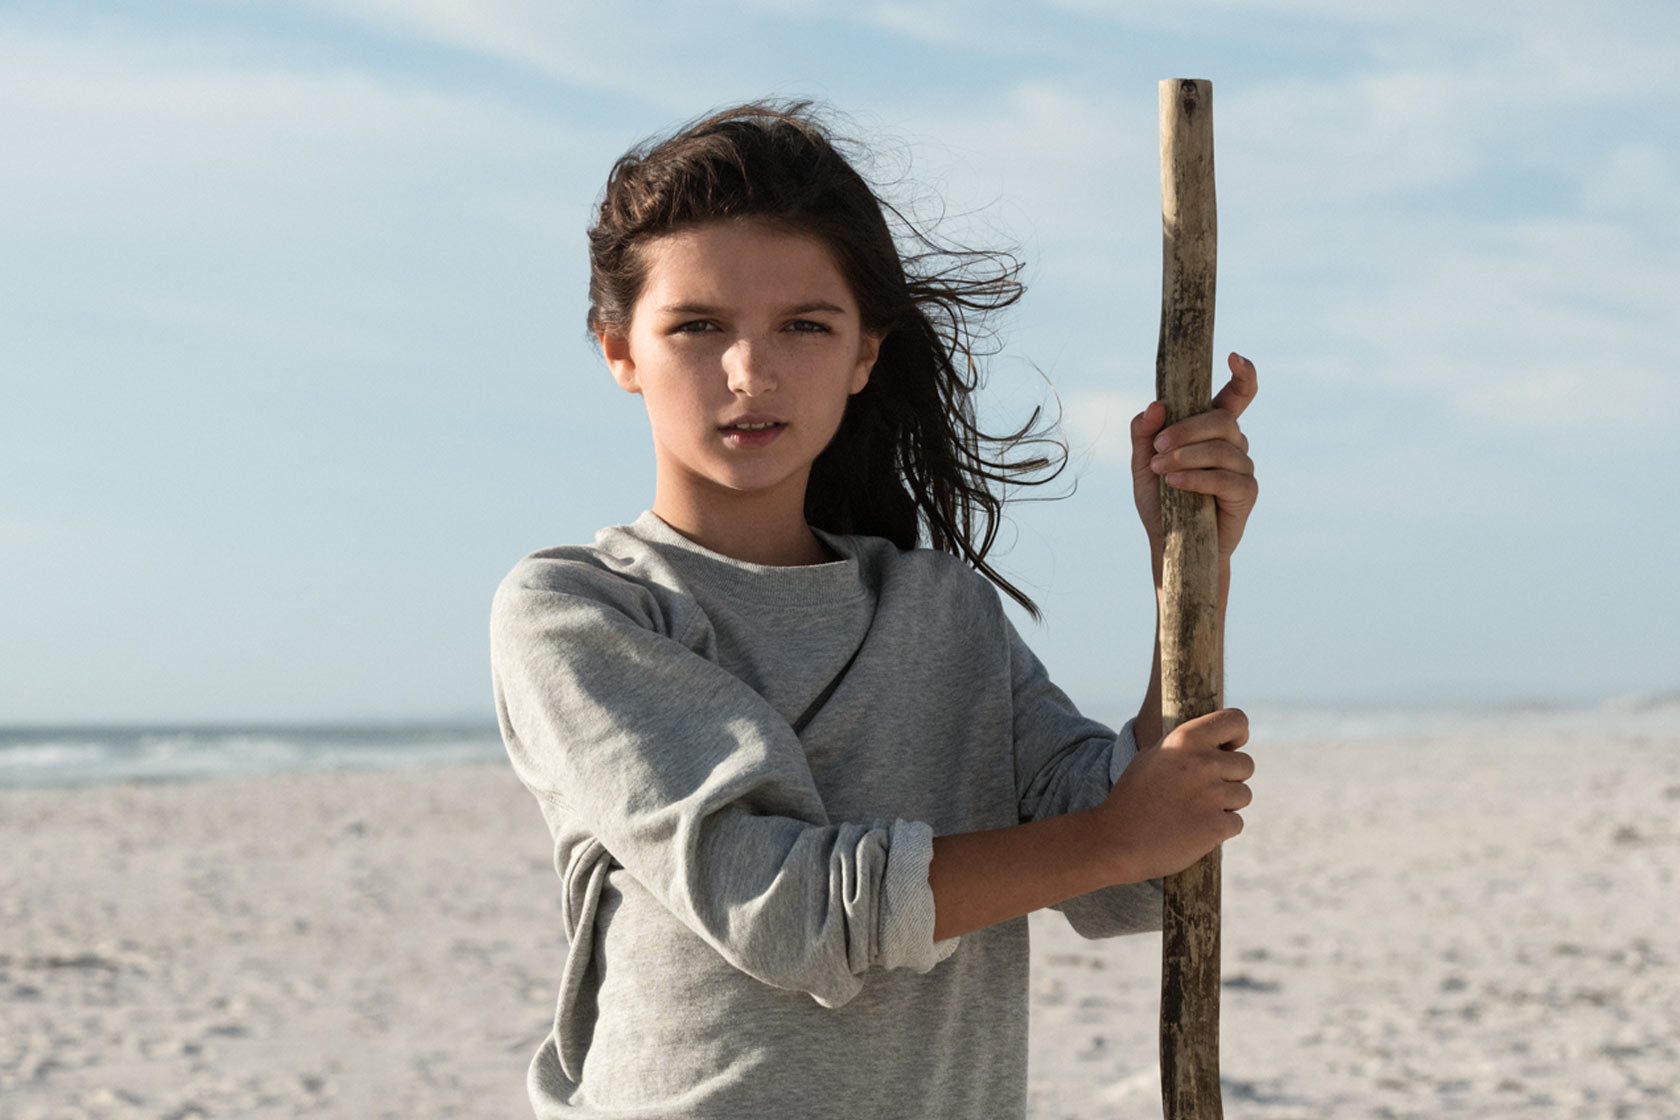 Flicka står på stranden med en pinne i handen